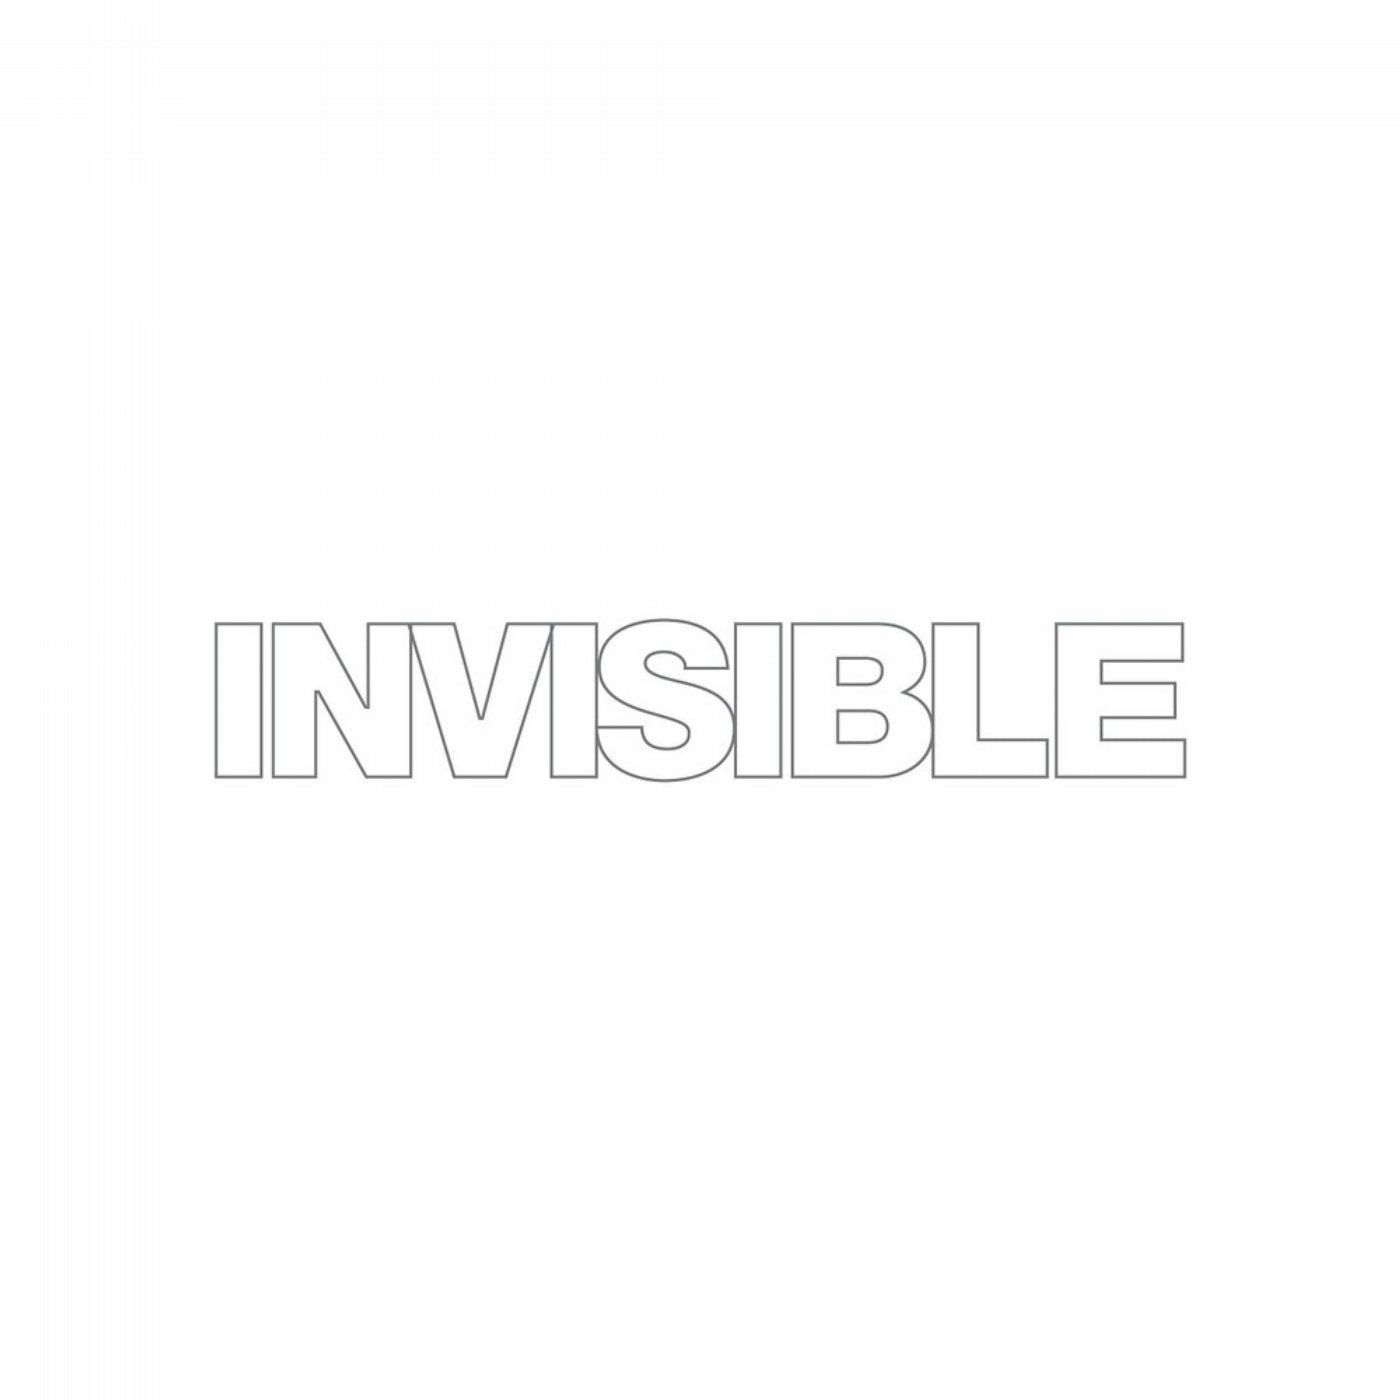 Invisible 015